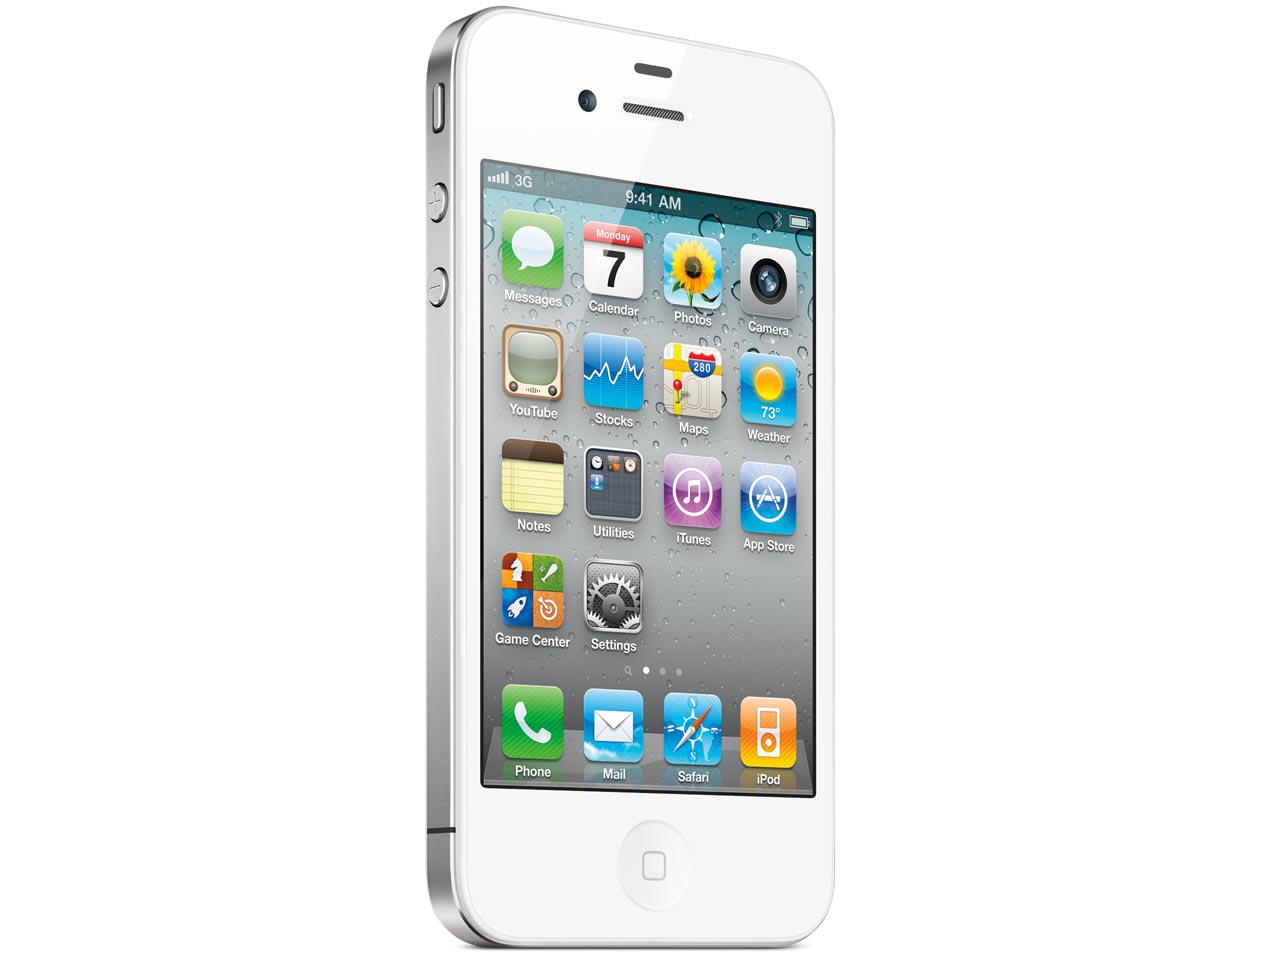 価格.com - 『本体 正面 ホワイト』 iPhone 4 16GB SoftBank [ホワイト] の製品画像